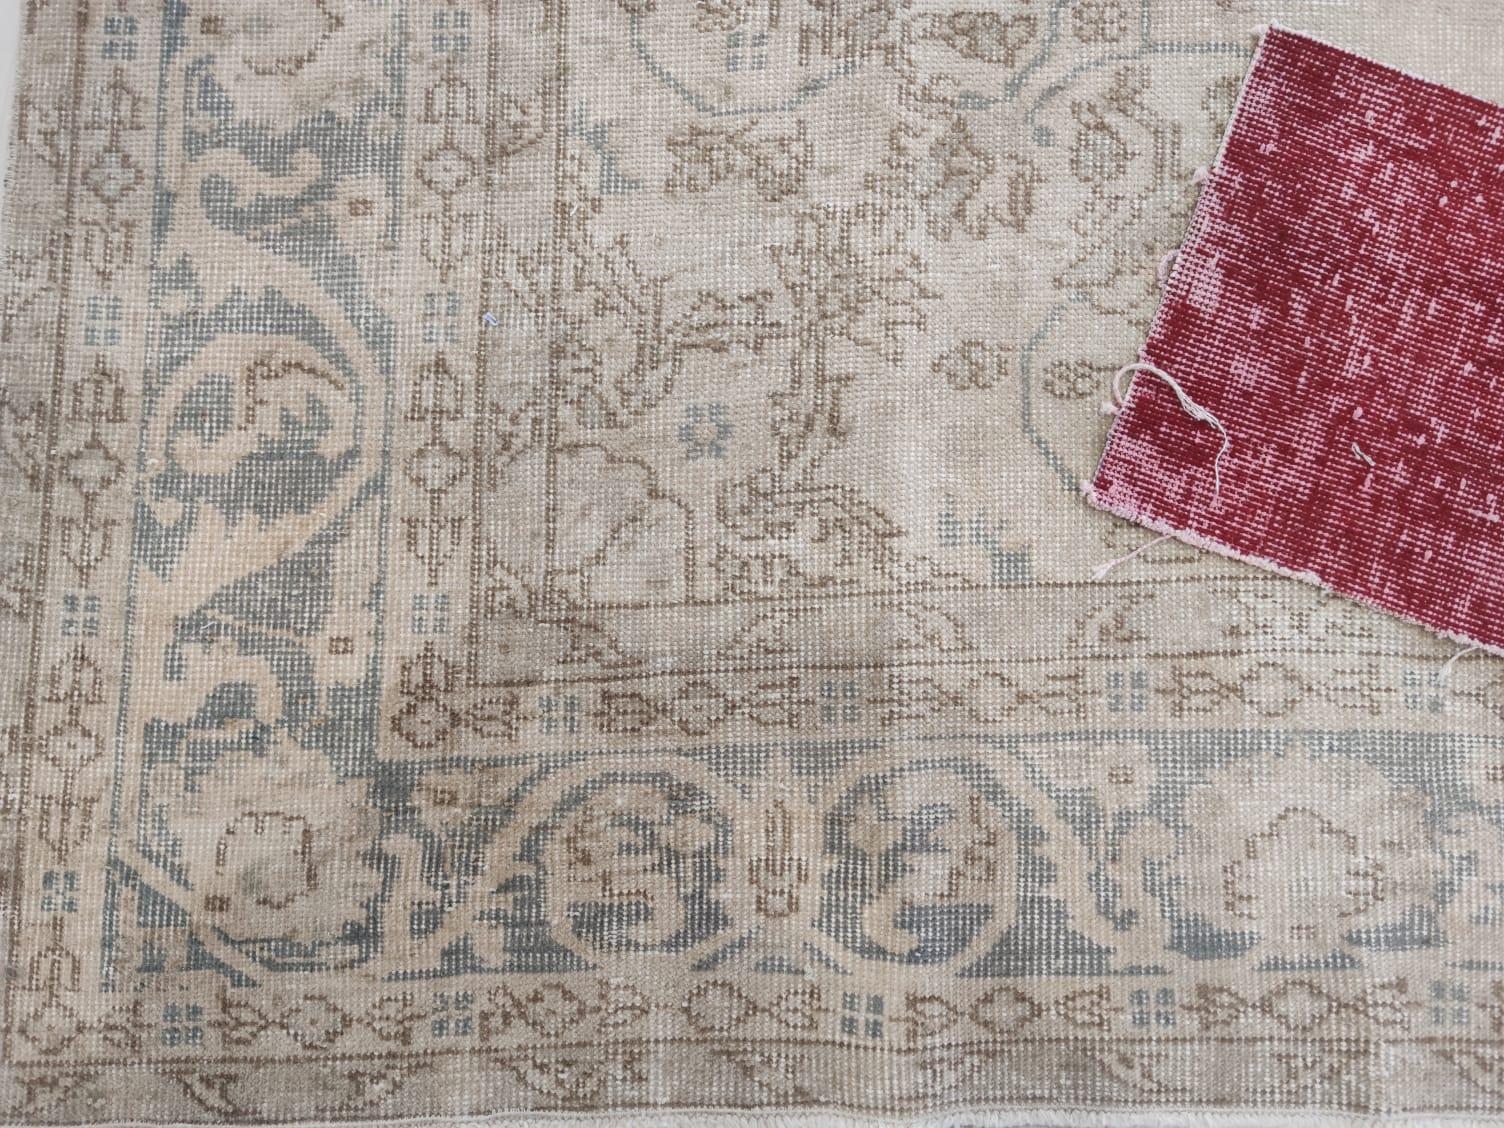 Wool 7.2x10.8 ft Vintage Medallion Design Rug. Neutral Colors, Handmade Large Carpet For Sale